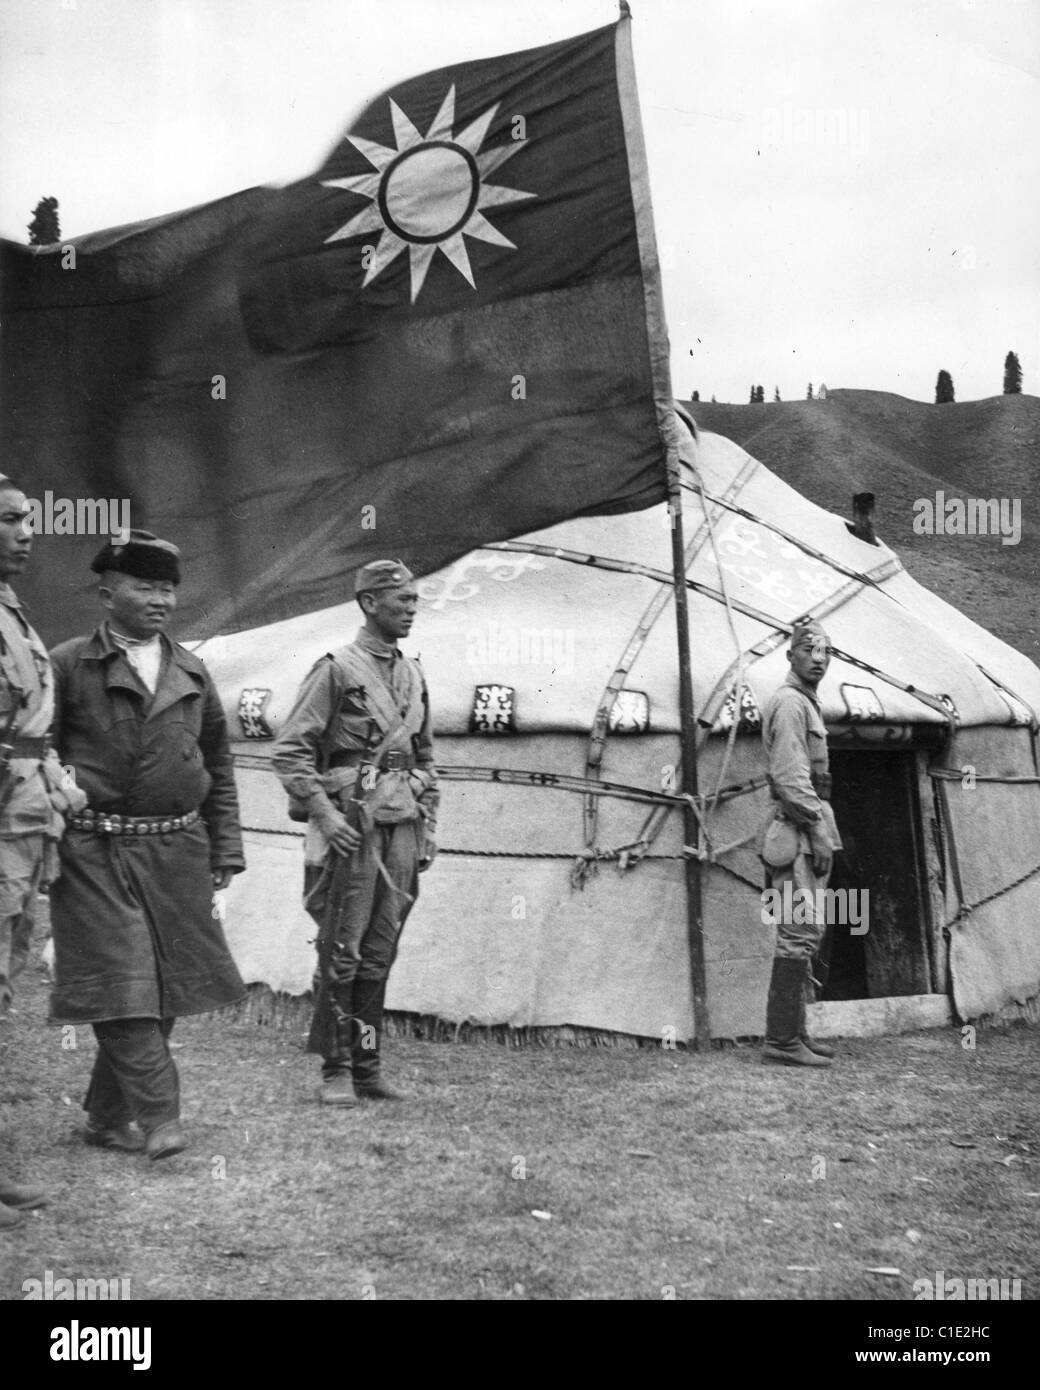 La guerre sino-japonaise de l'armée chinoise avec les dirigeants kazakhs à l'intérieur d'une yourte avec le drapeau nationaliste à l'extérieur - vers 1940 Banque D'Images